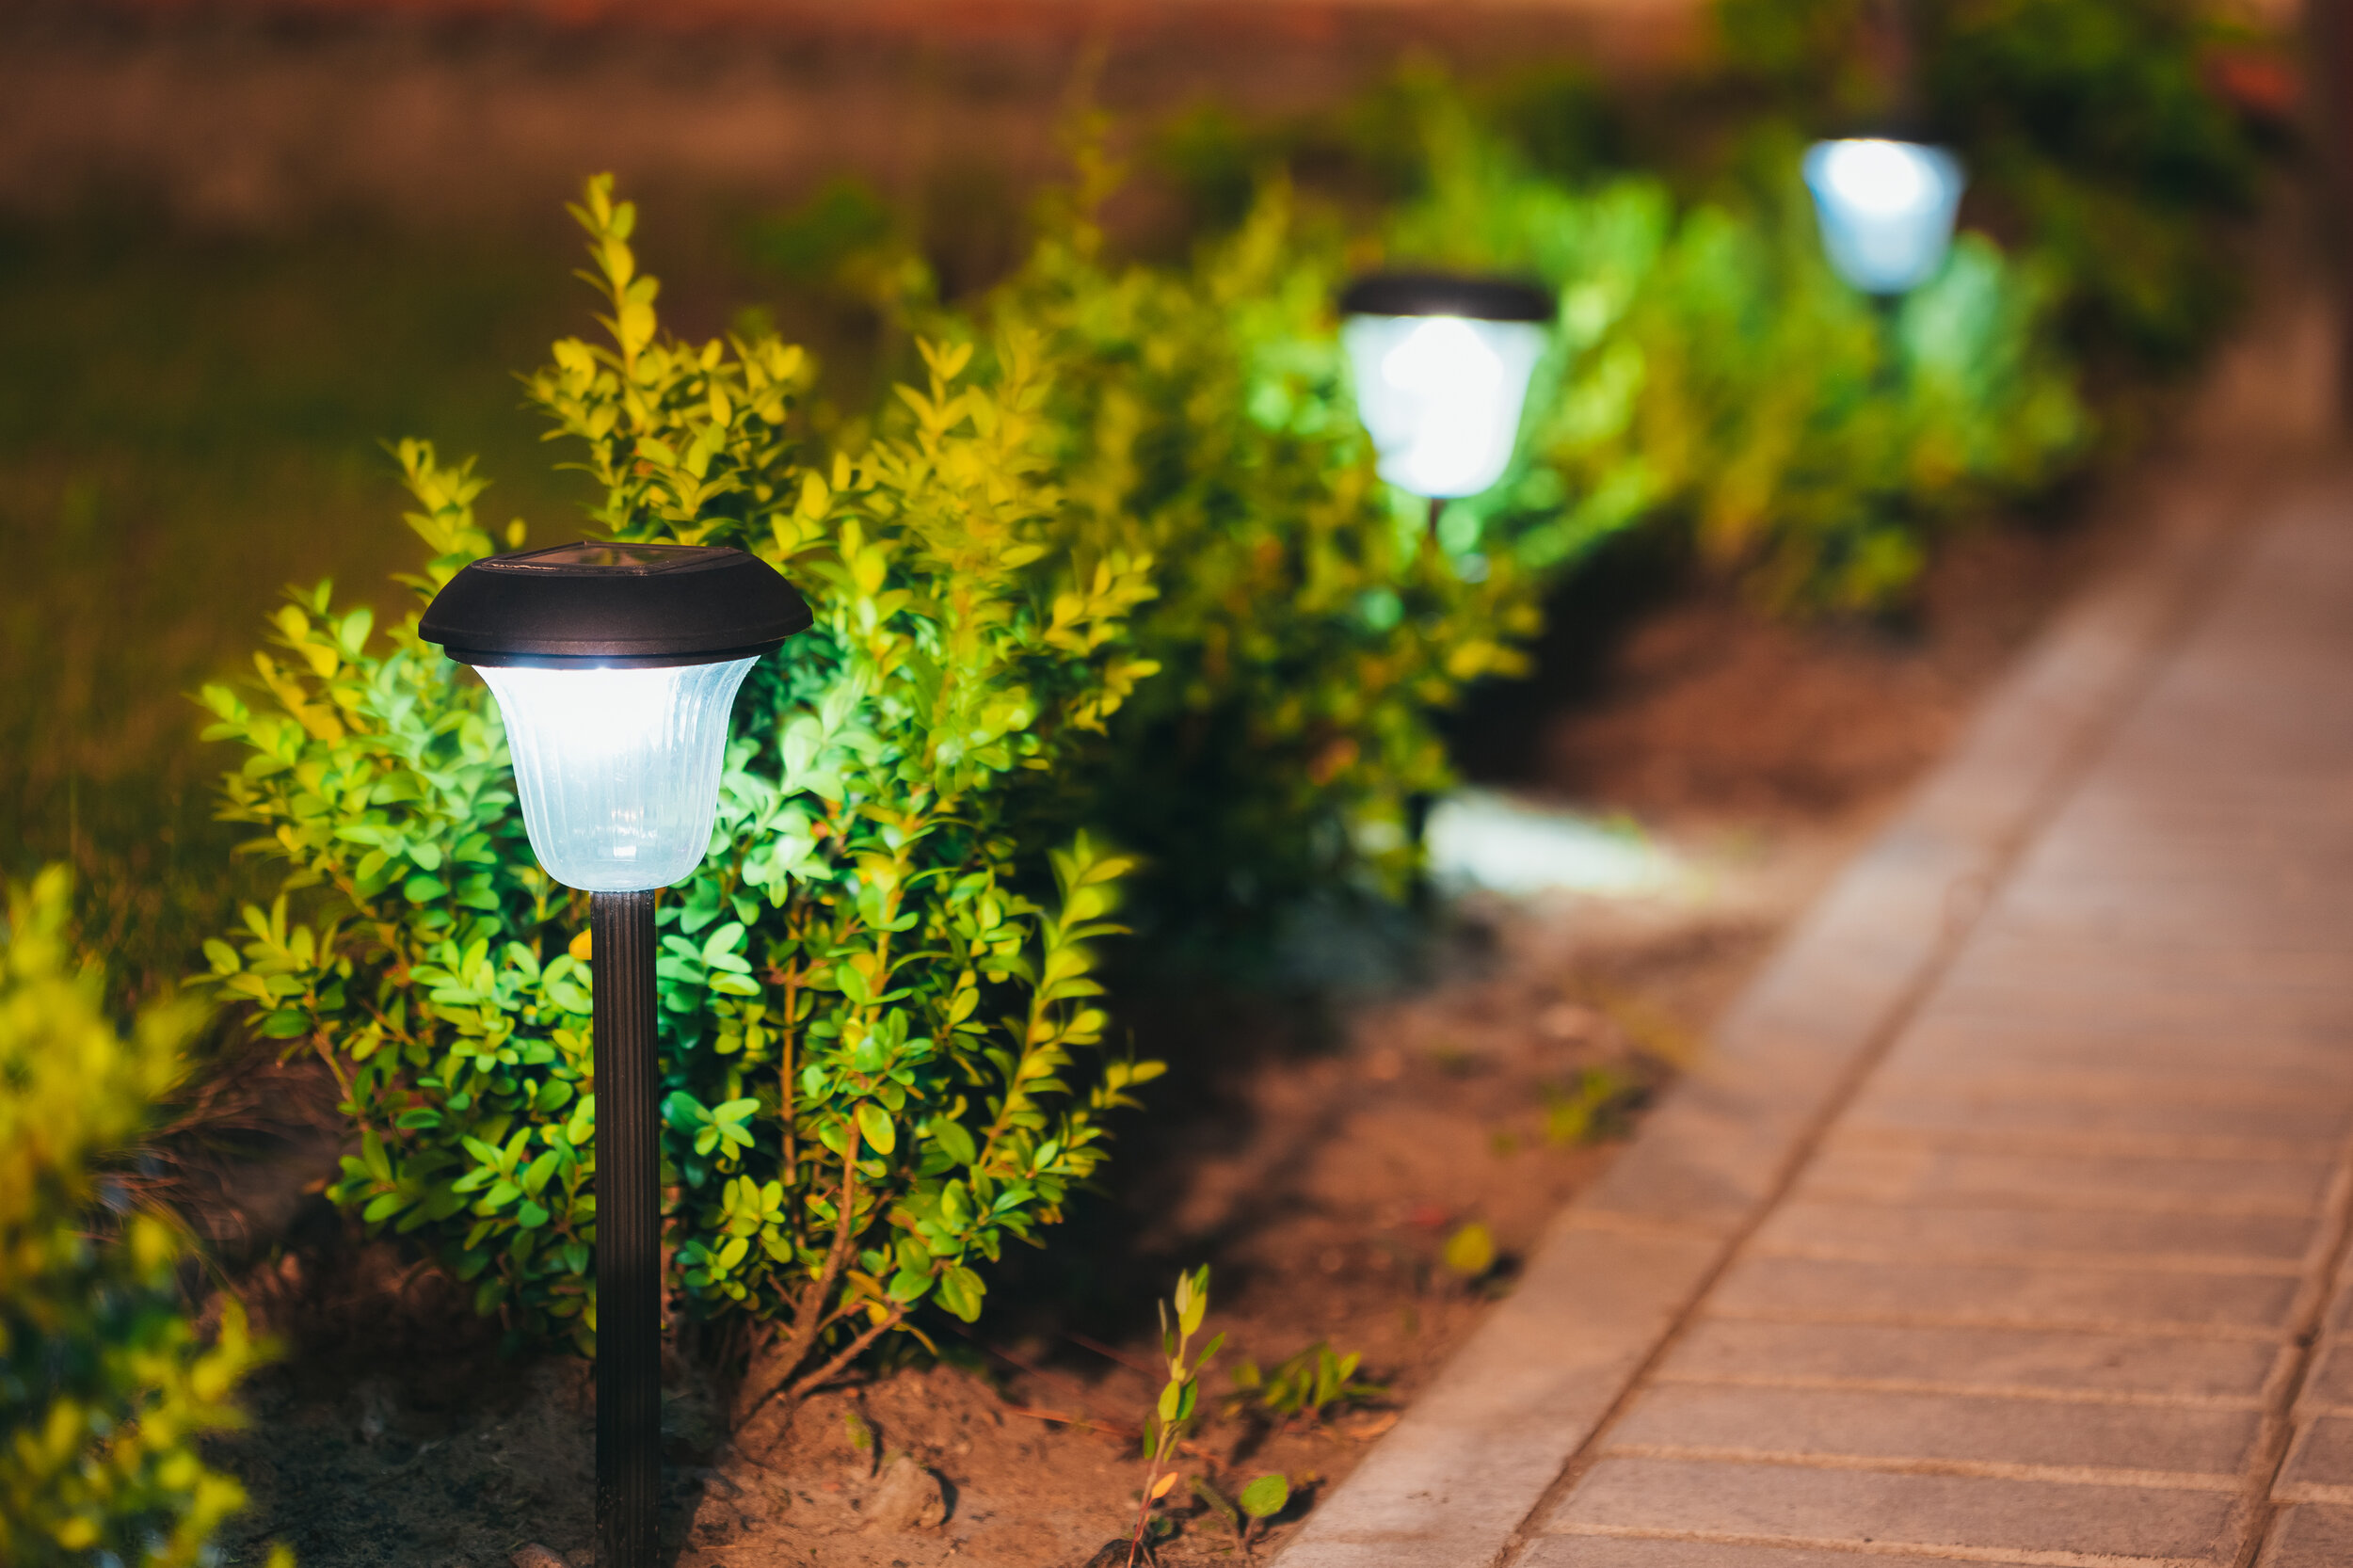 Proberen De daadwerkelijke gebrek LED Is Best for Outdoor Lighting — Commercial Lawn Irrigation